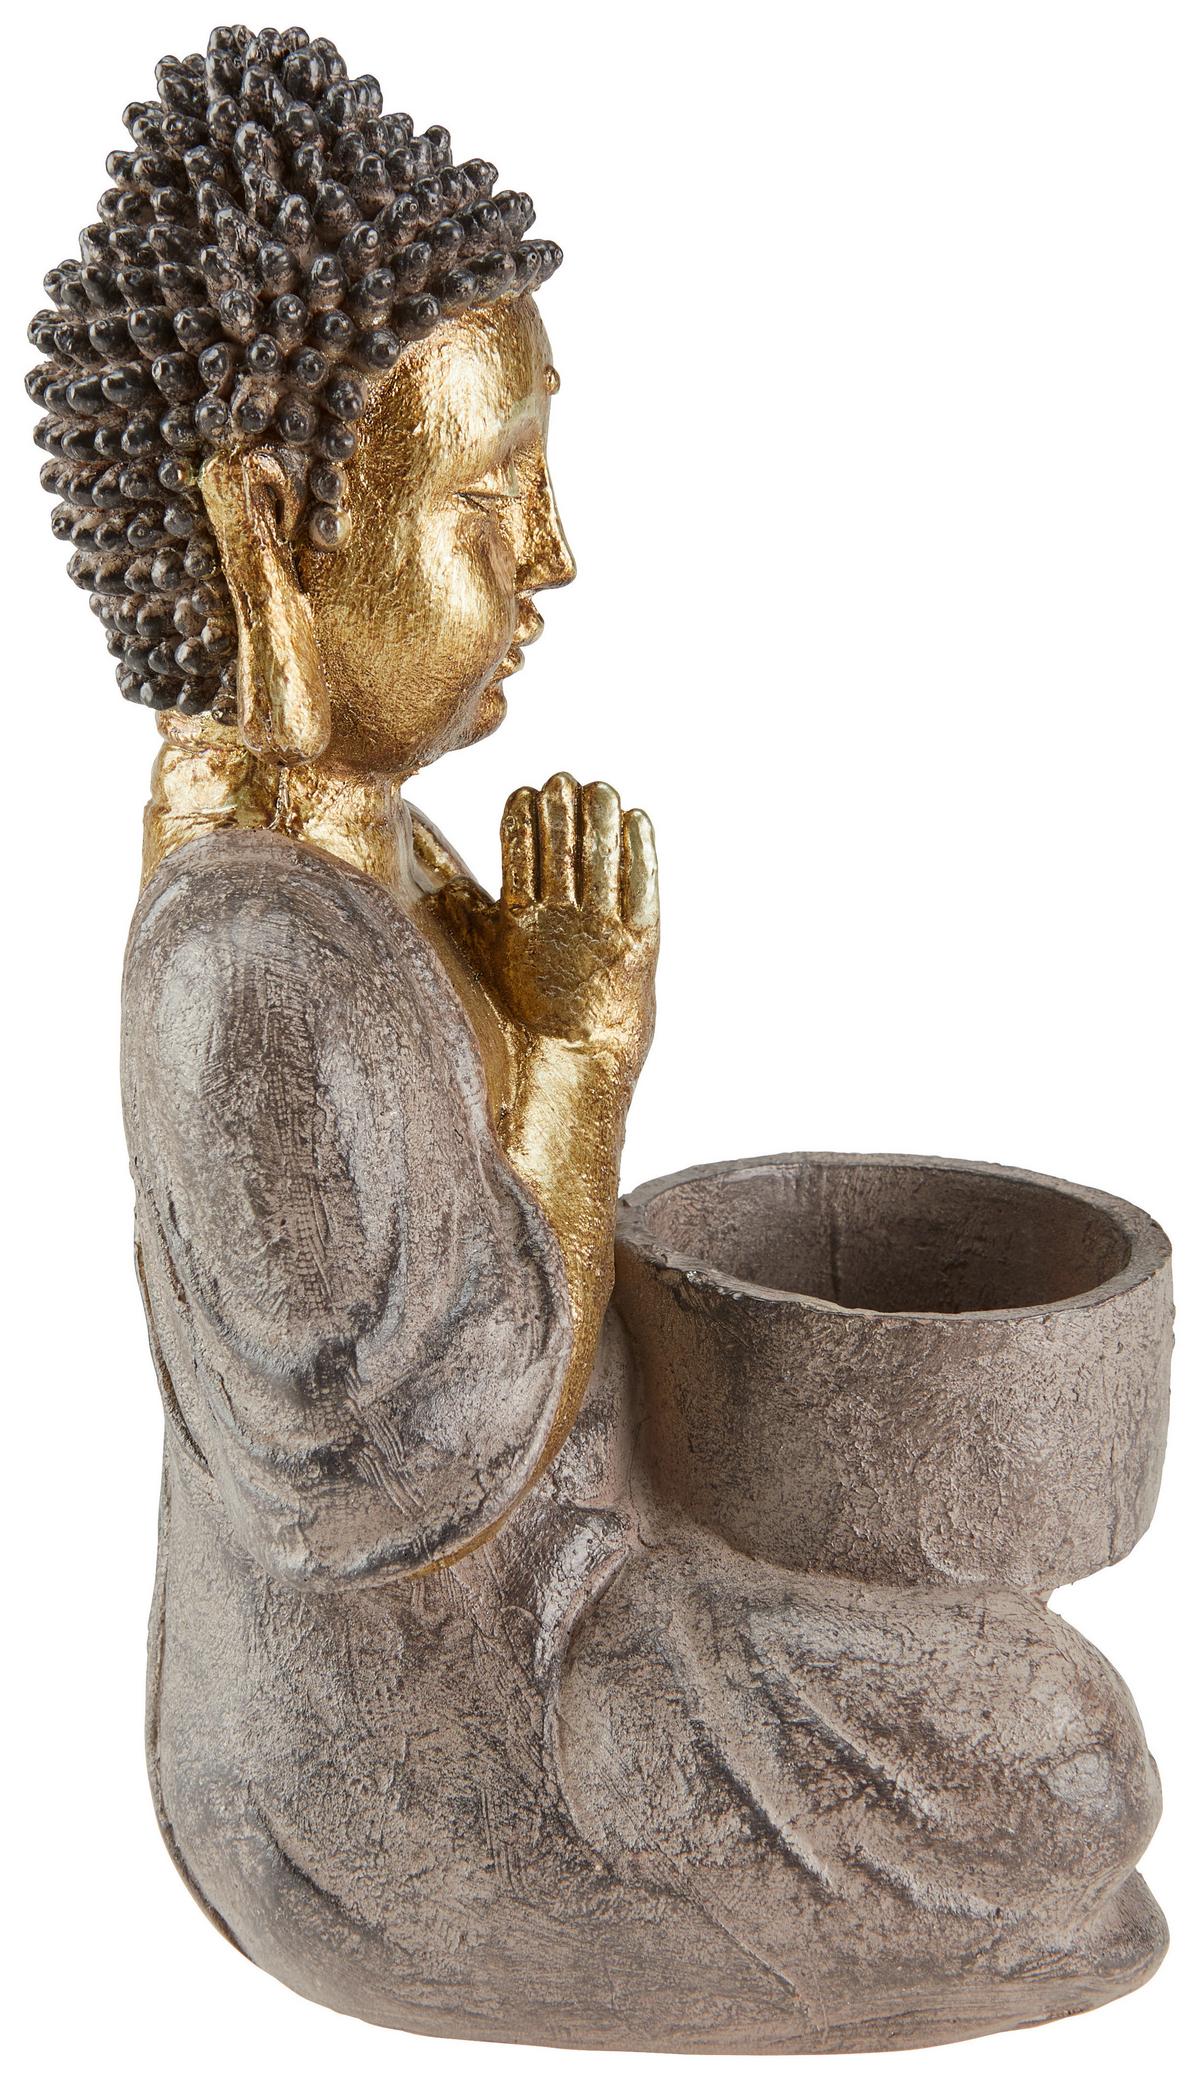 Teelichthalter als braun-goldfarbene Buddha-Figur